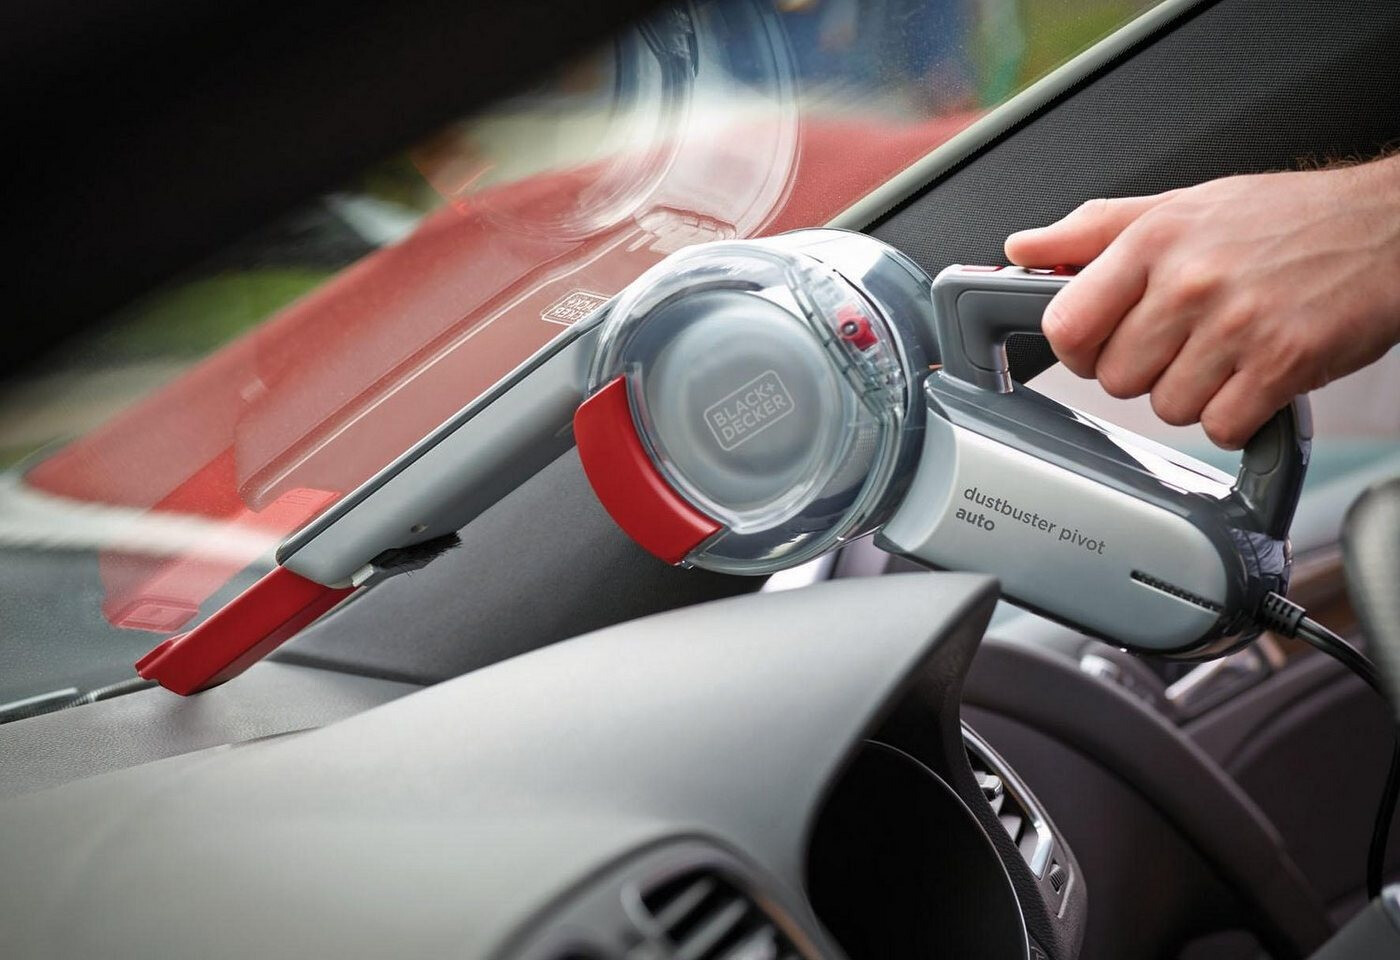 Black + Decker Car Pivot Bagless Handheld Vacuum & Reviews